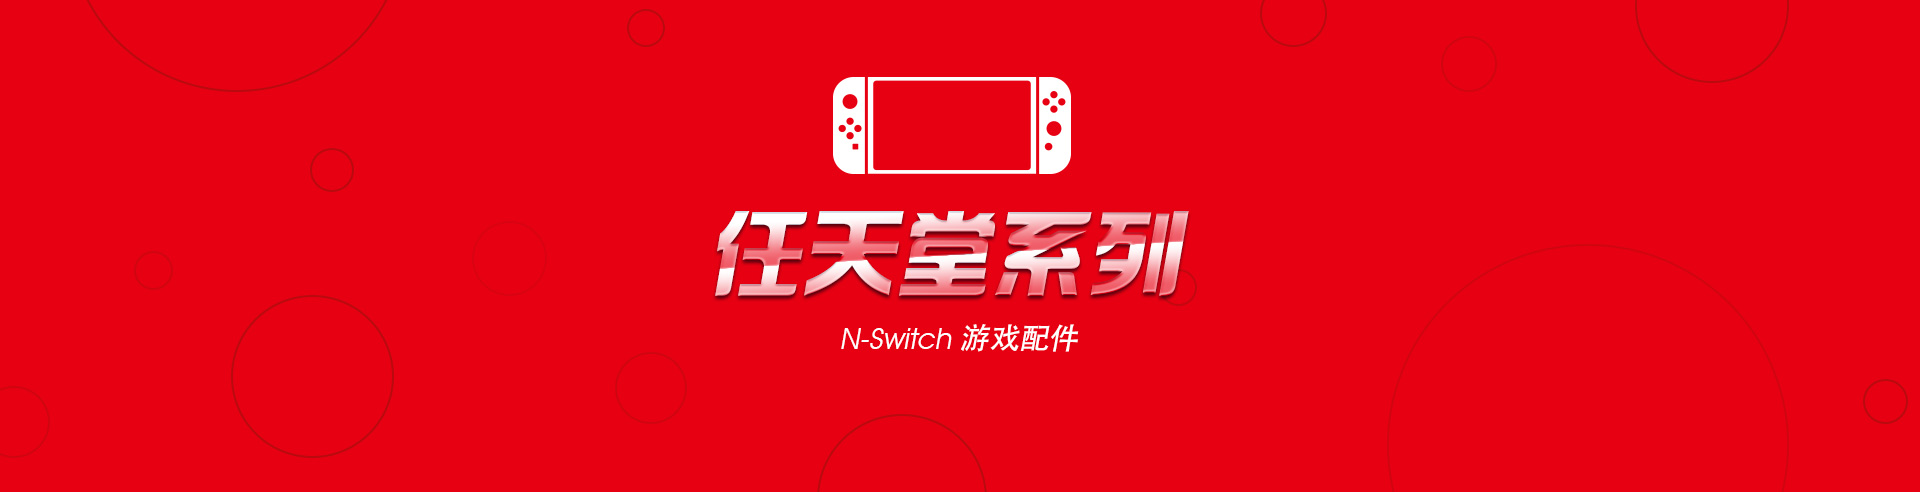 N-Switch系列游戏配件